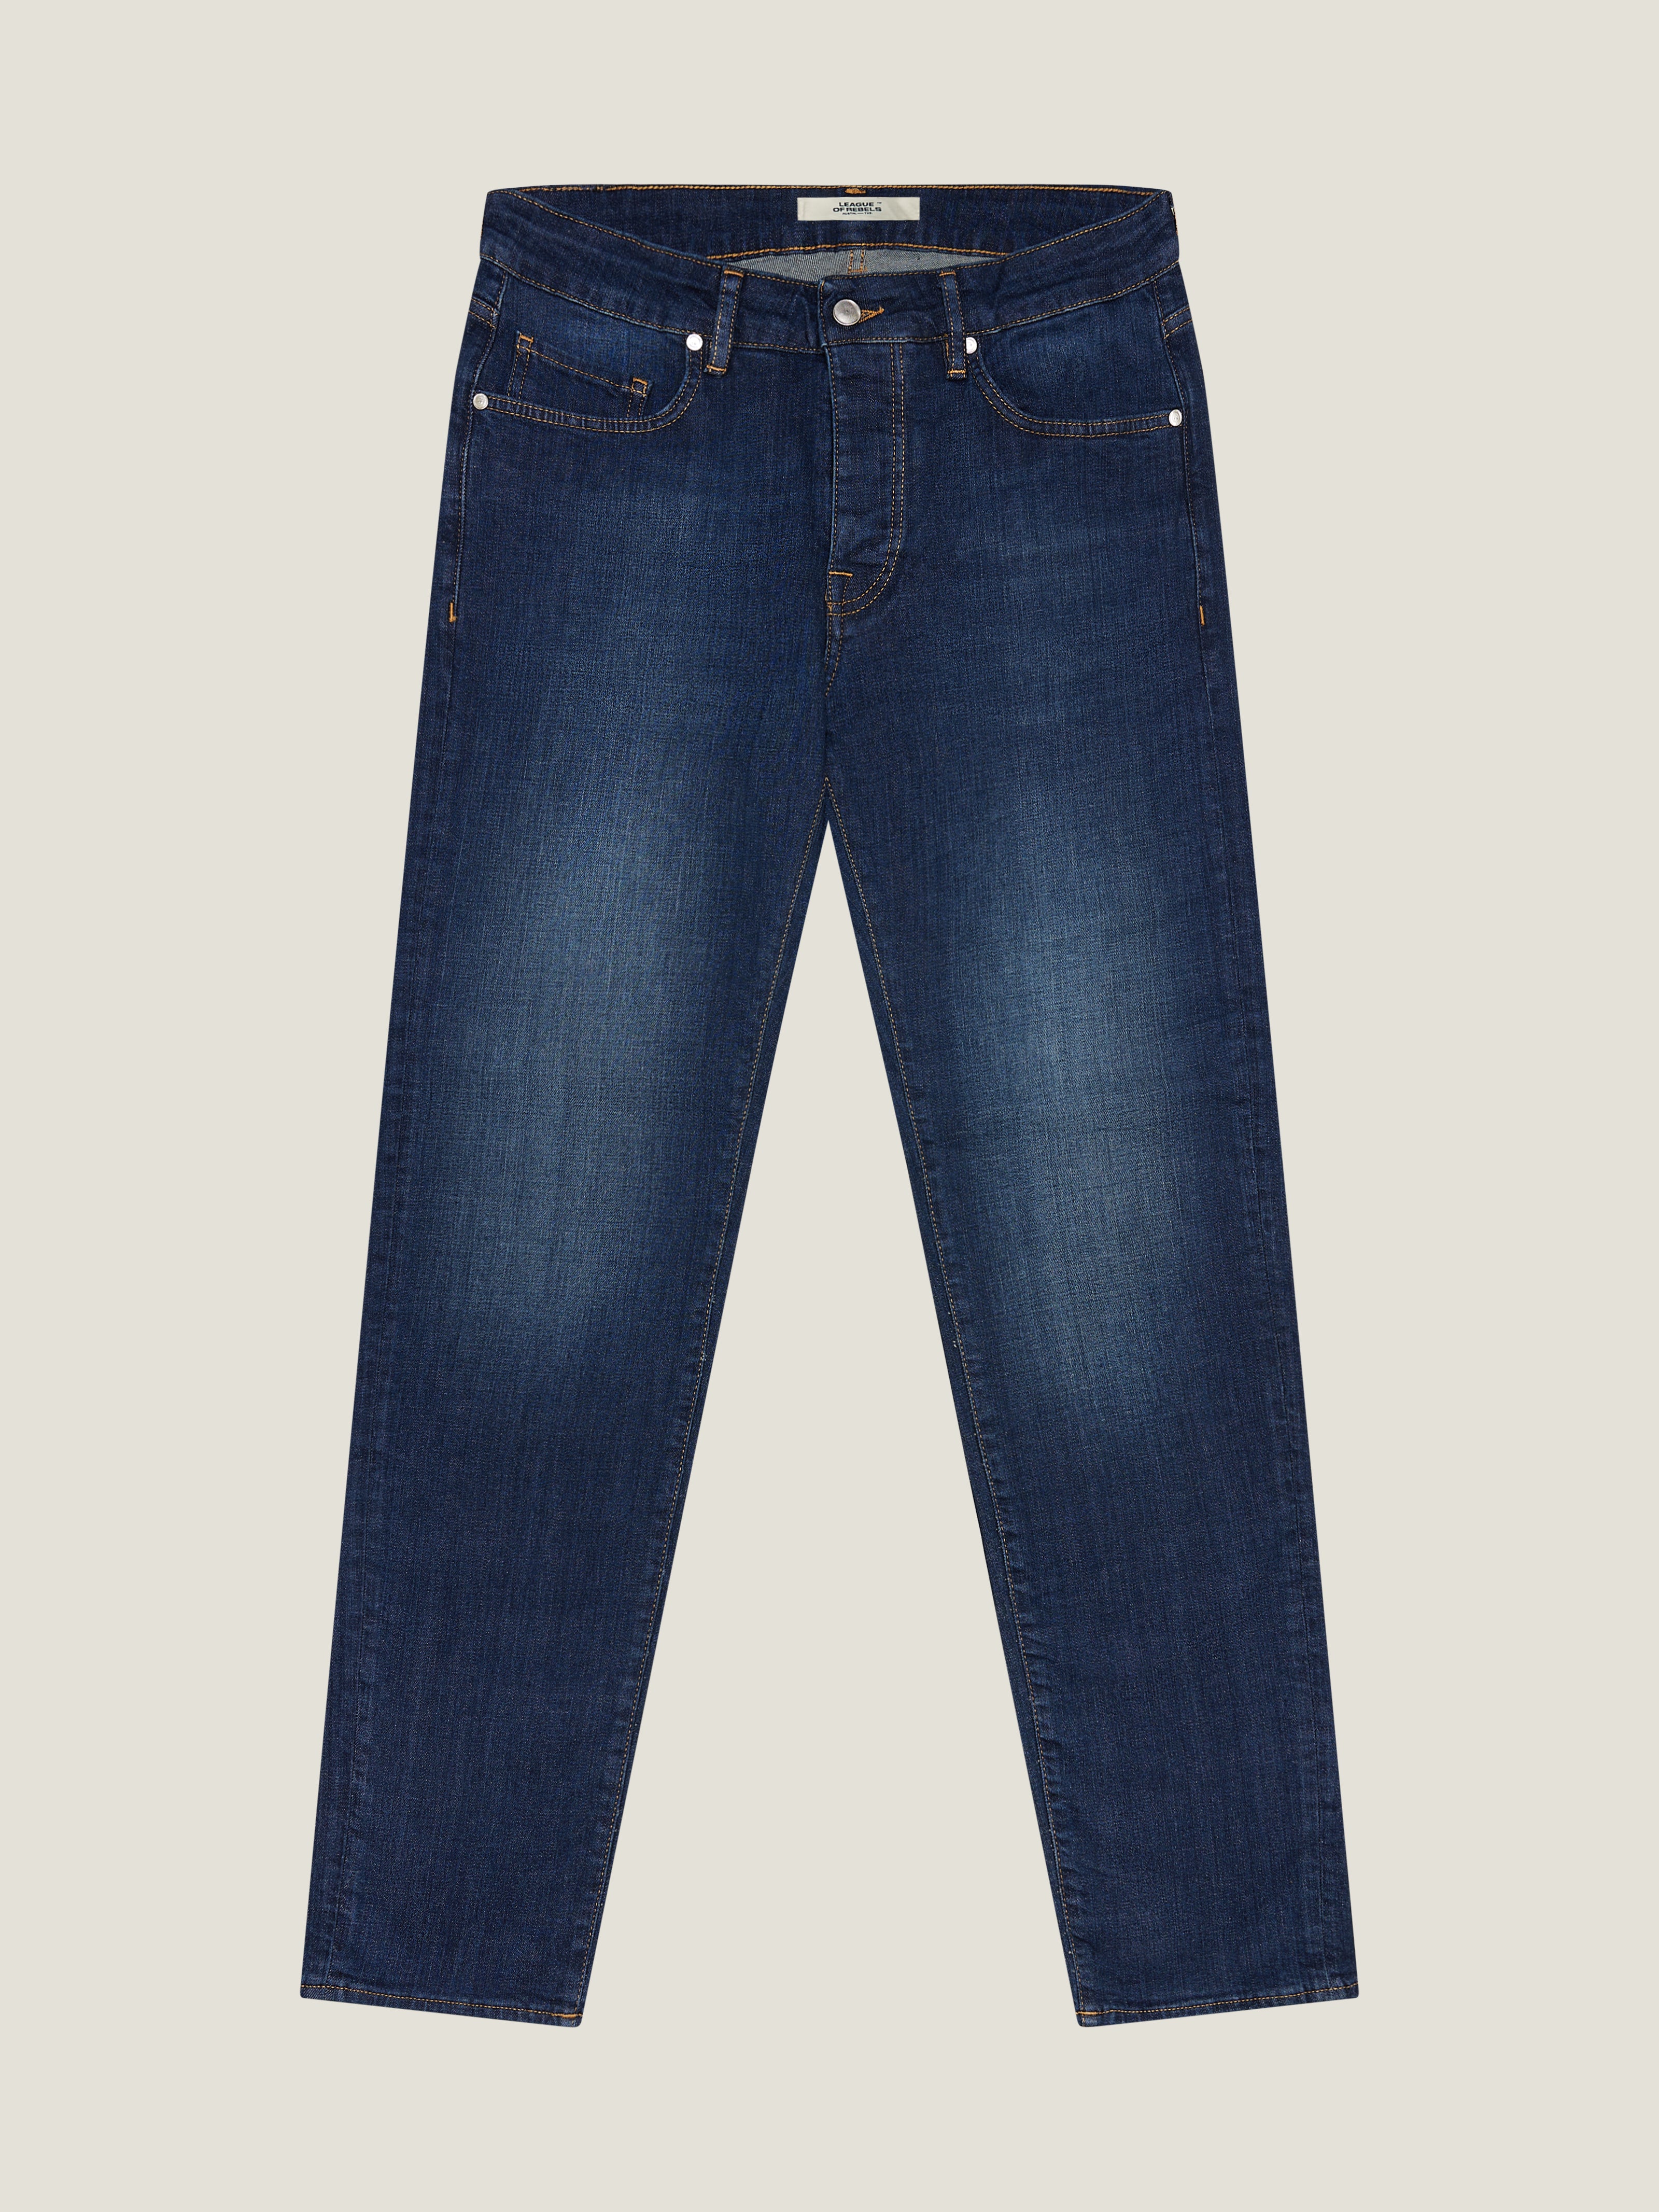 Indigo Slim-fit Jeans